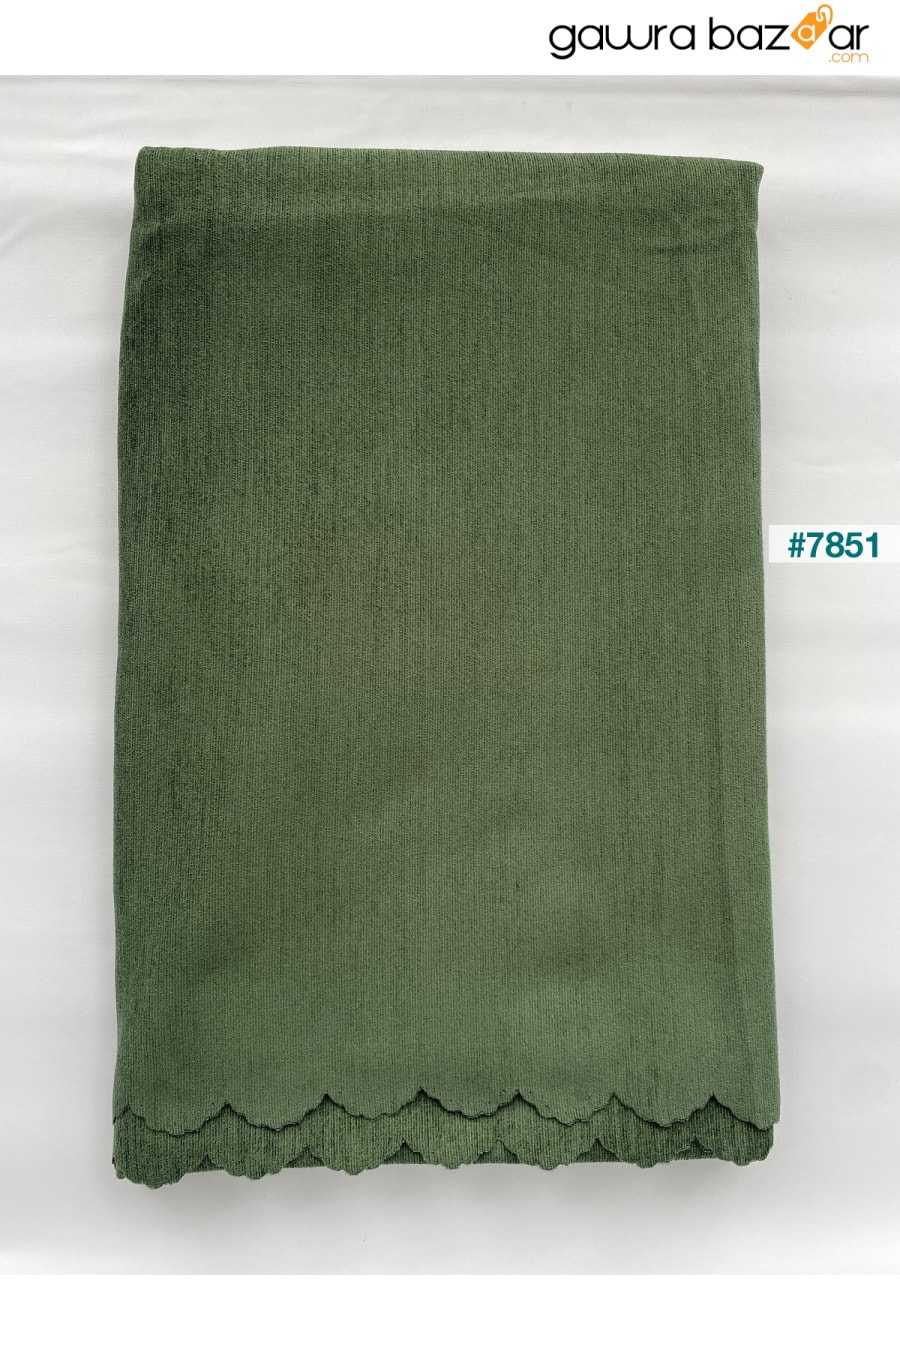 غطاء أريكة شينيل مزدوج الوجهين باللون الأخضر من Nefti غطاء أريكة سرير رمي Koçhan Manifatura 2